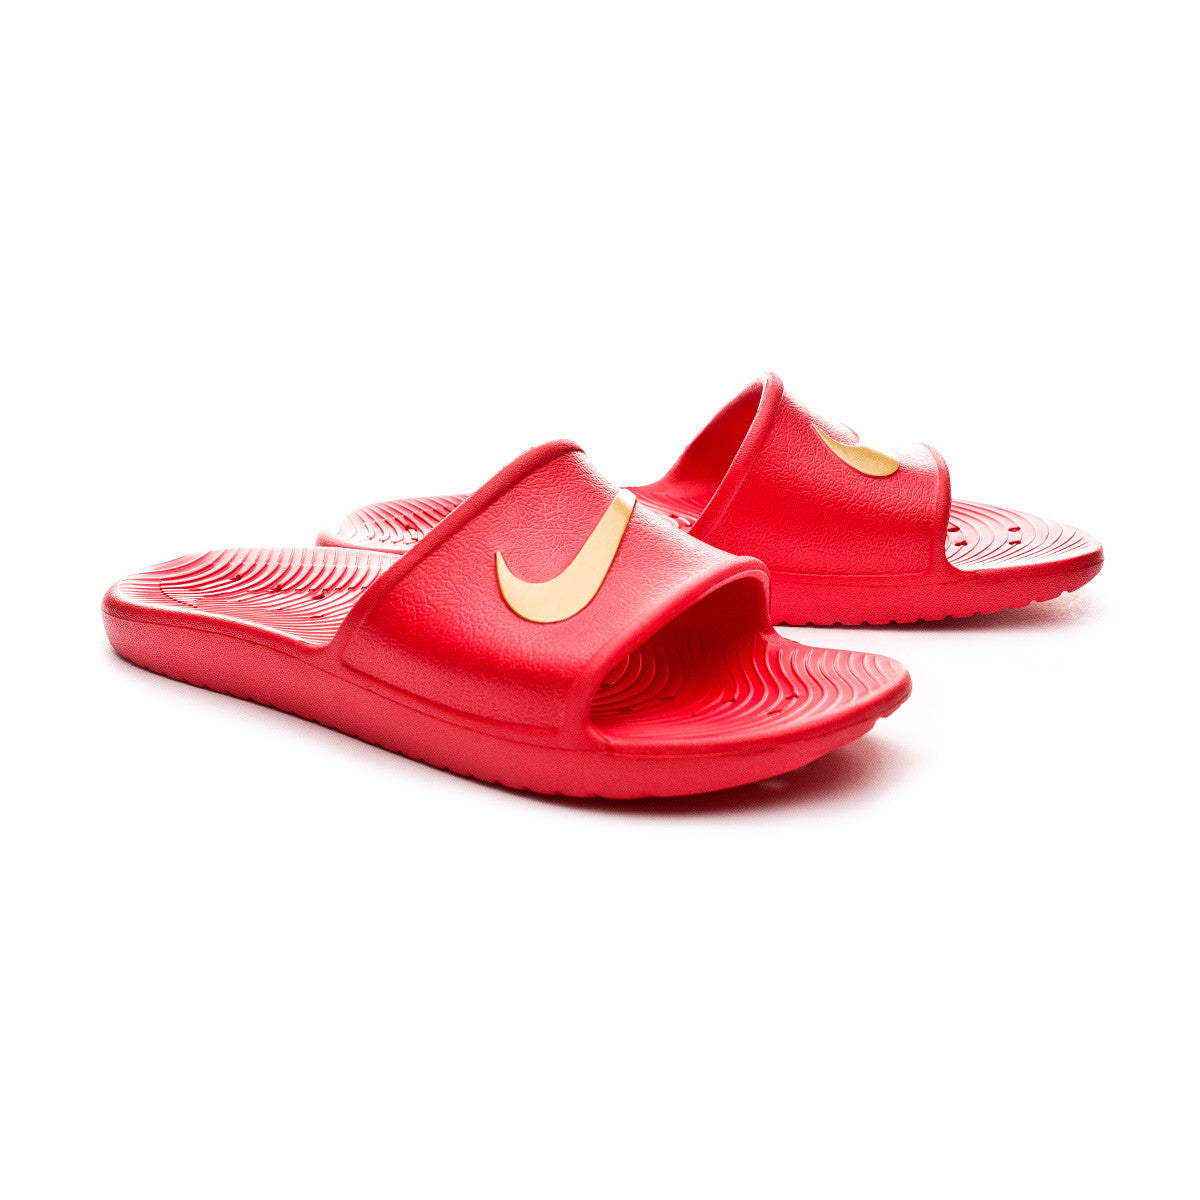 islide slippers